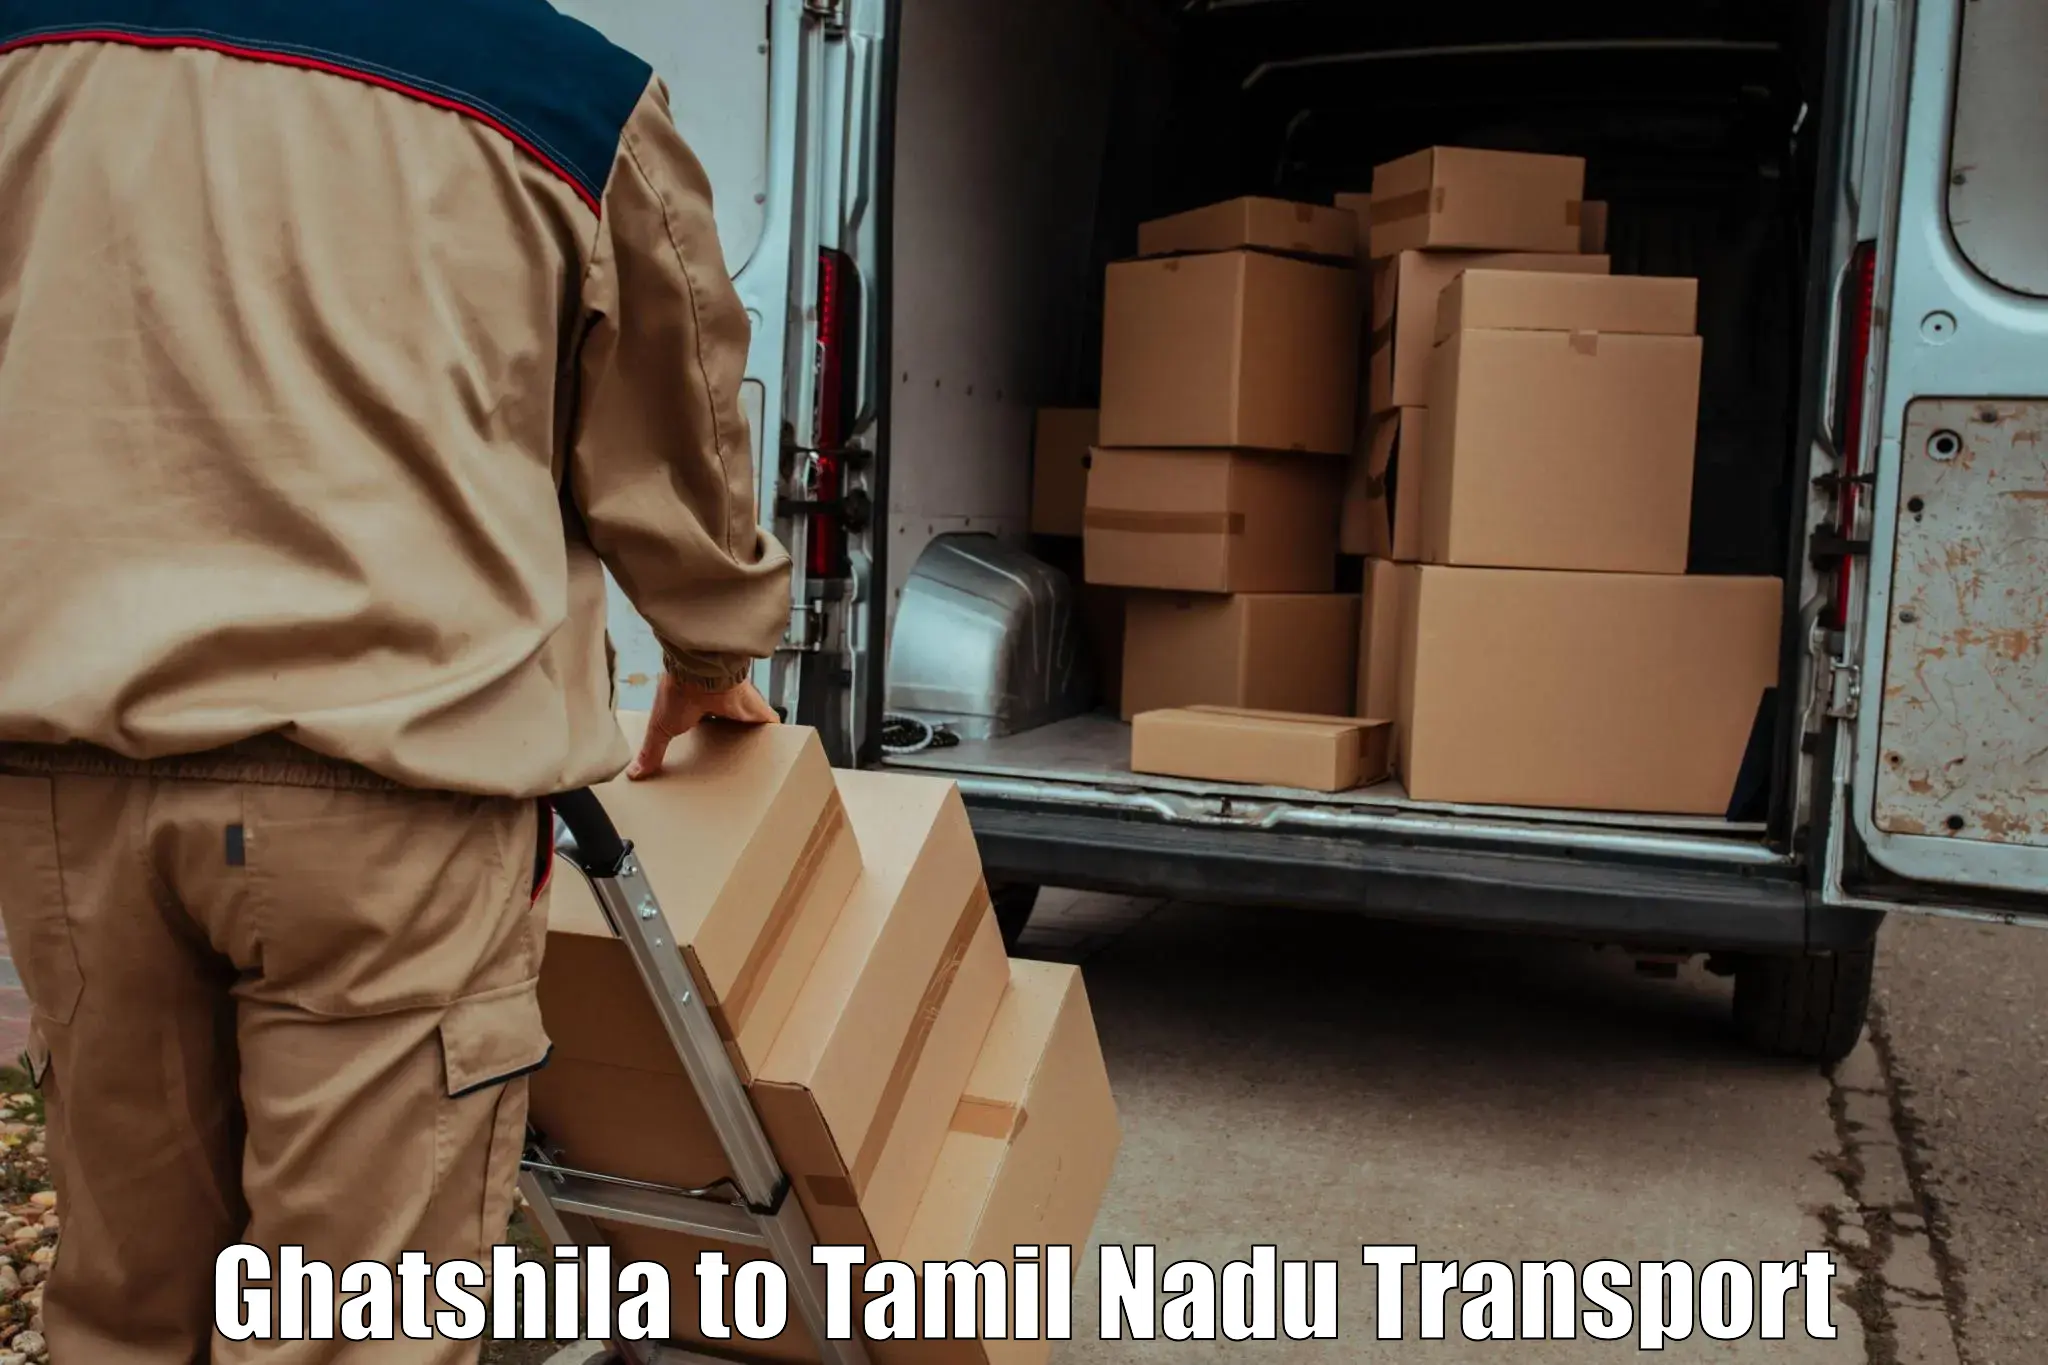 Online transport service Ghatshila to Chennai